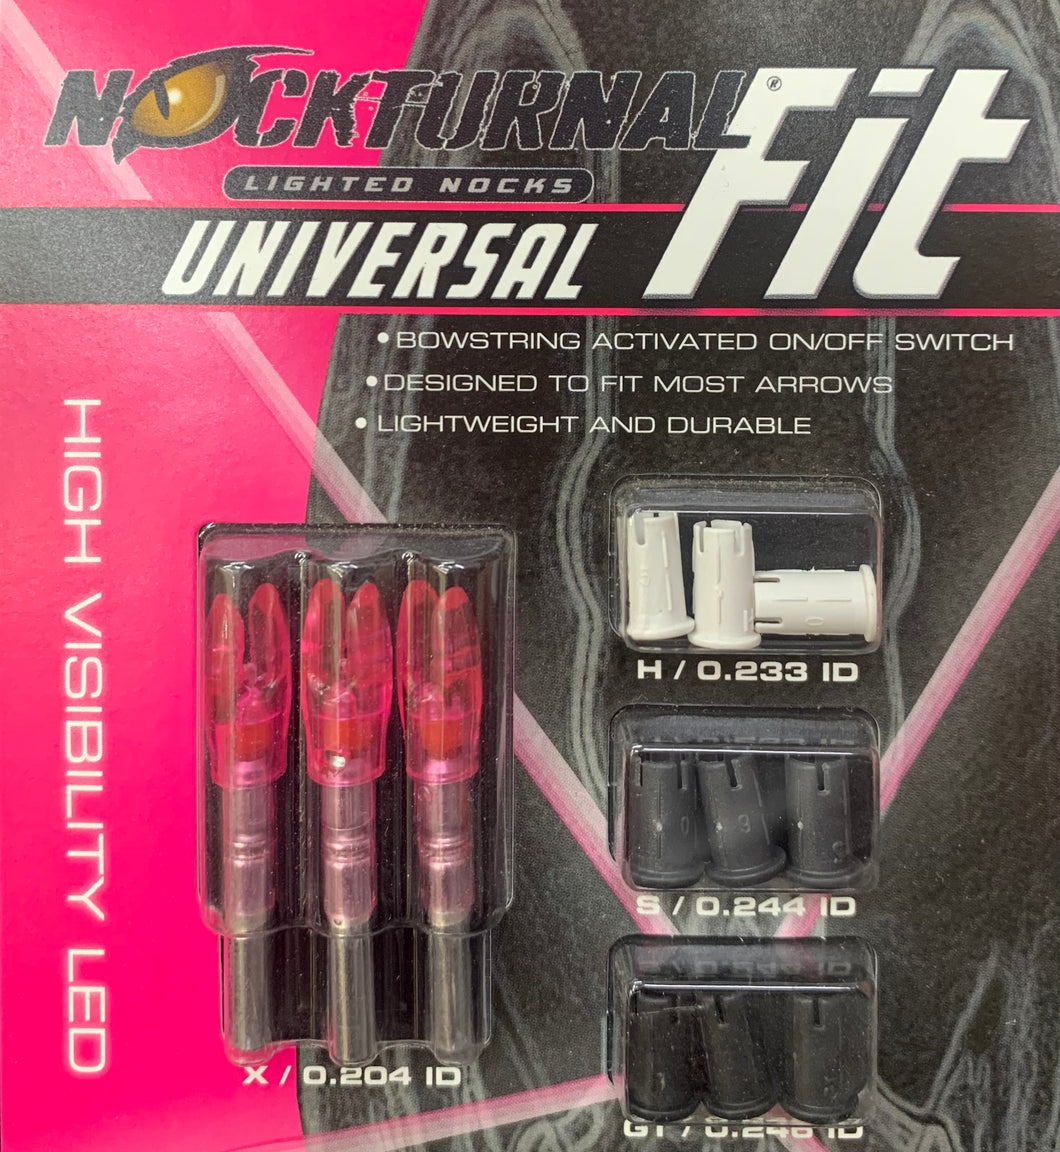 Nockturnal Universal Fit - Lighted Nocks (3 pack)